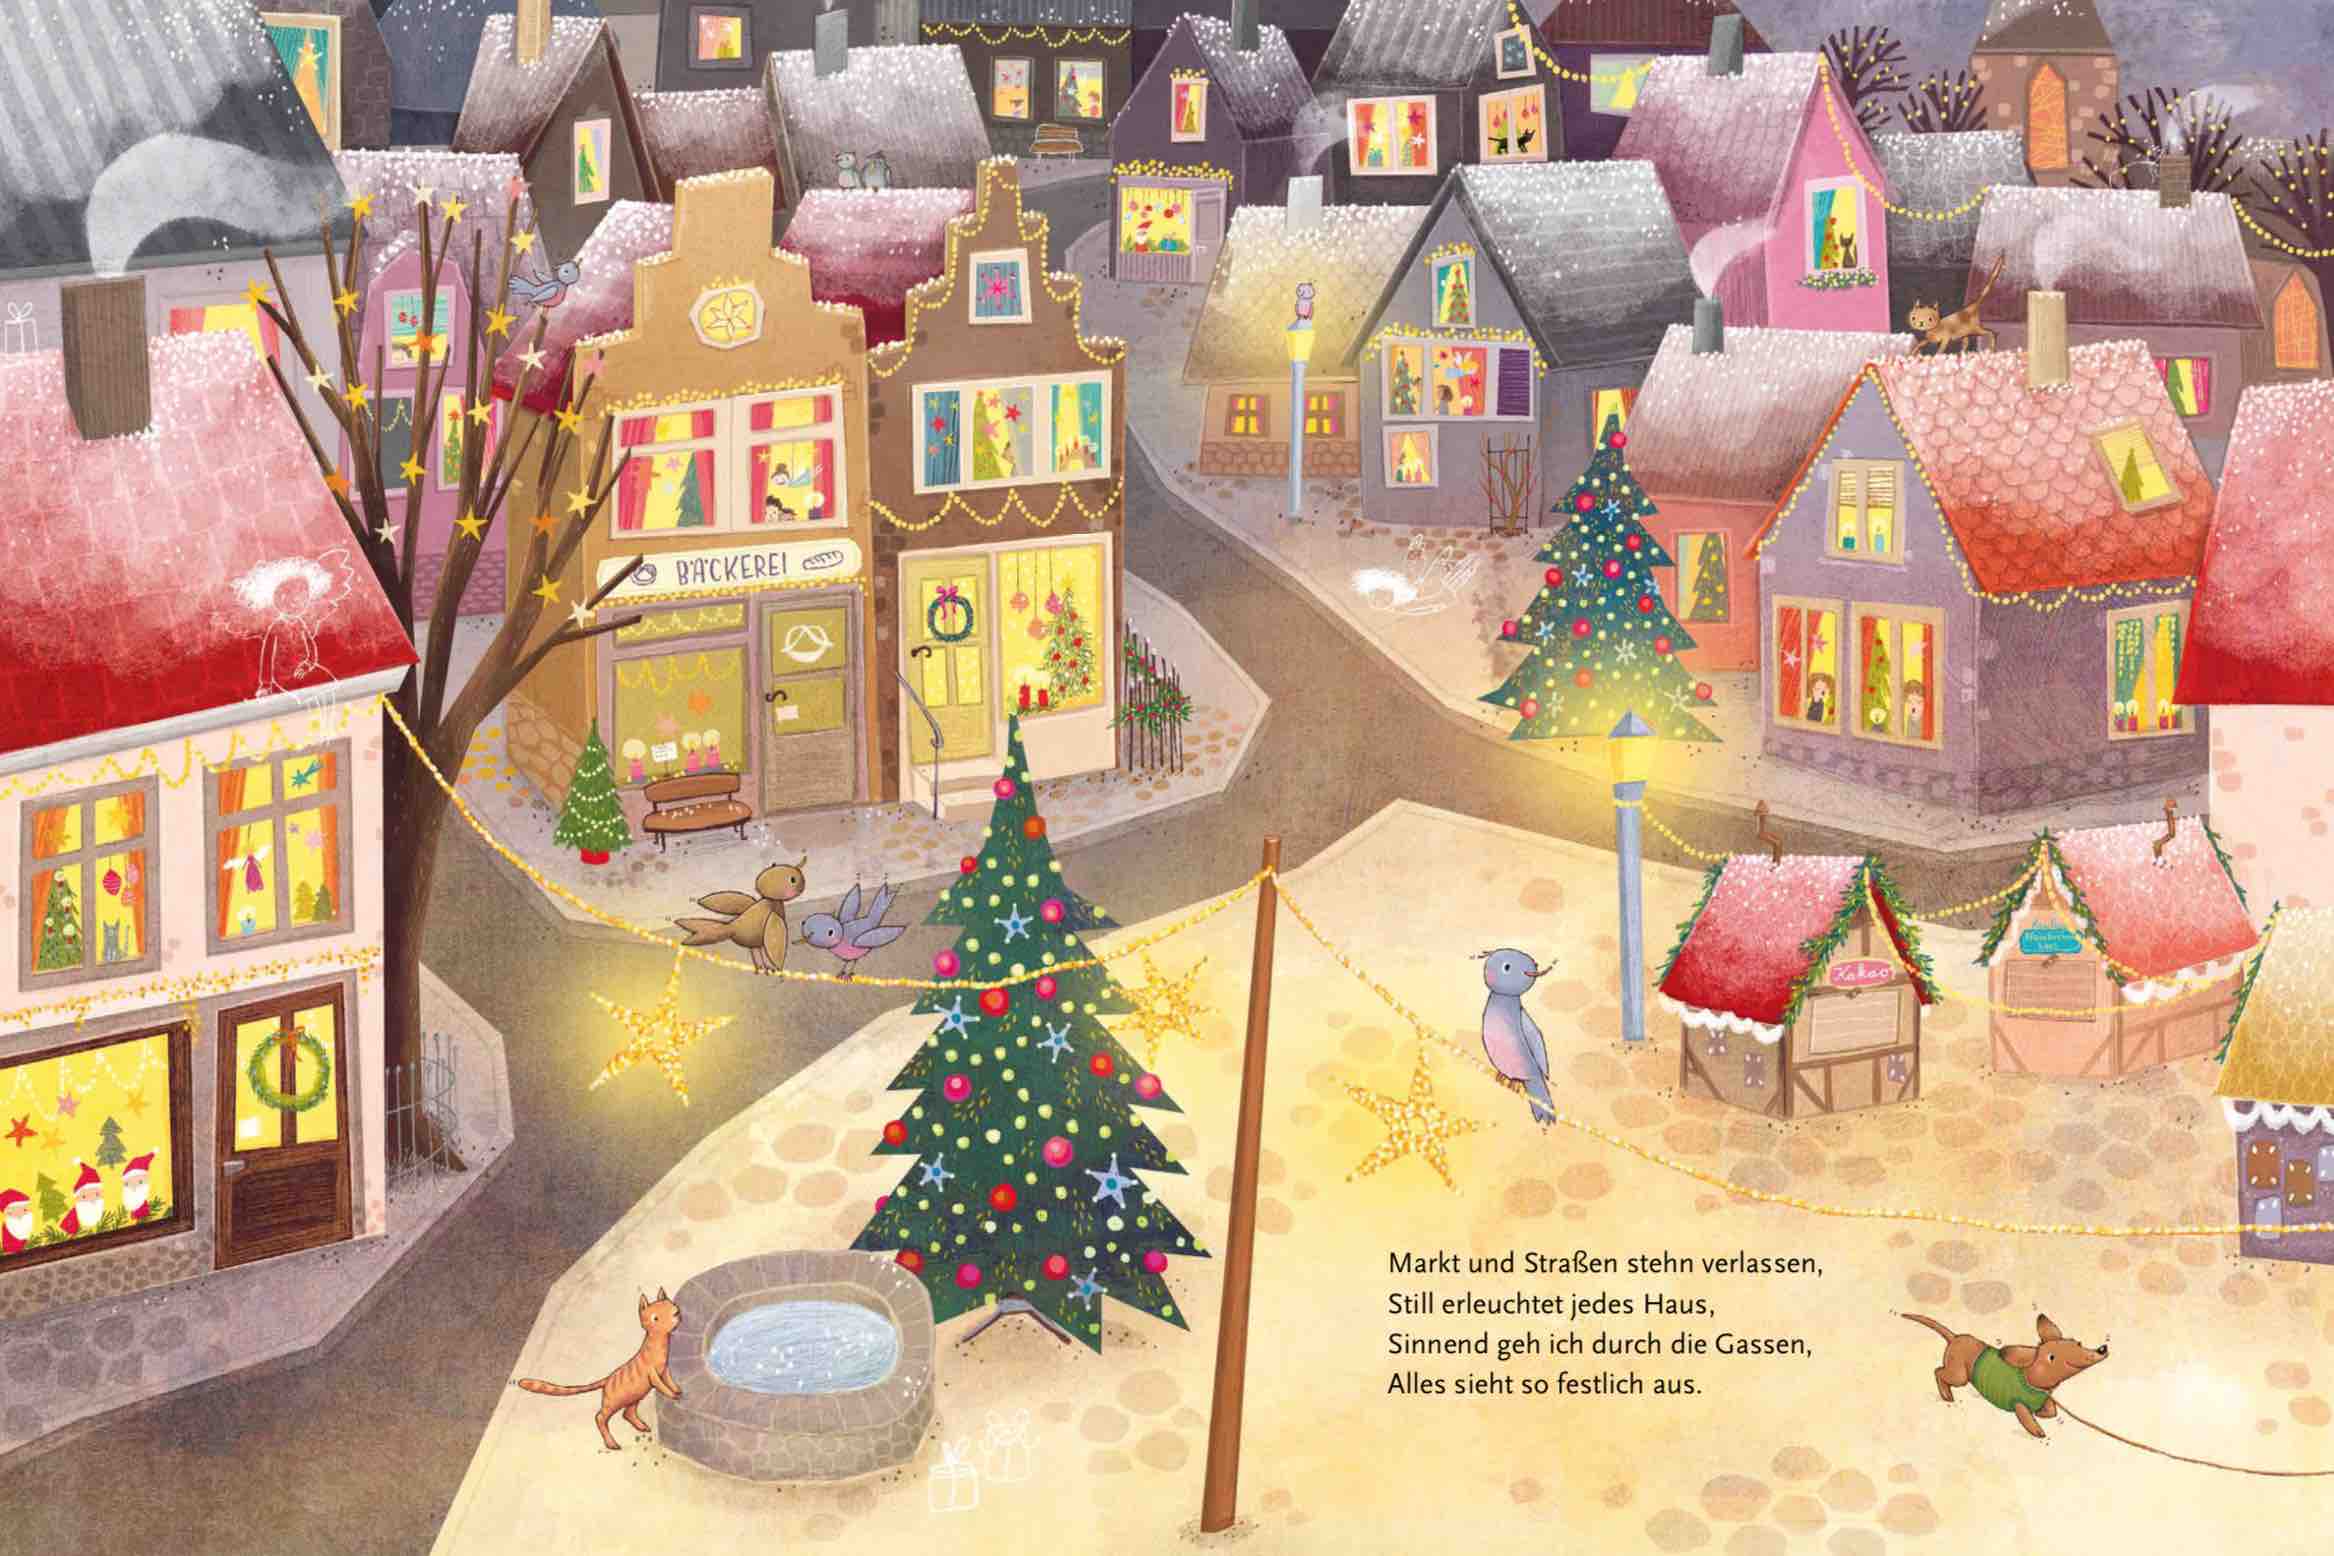 Joseph von Eichendorffs "Weihnachten" darf unter keinem Weihnachtsbaum fehlen. Illustration: Pe Grigo © Kindermann Verlag 2021